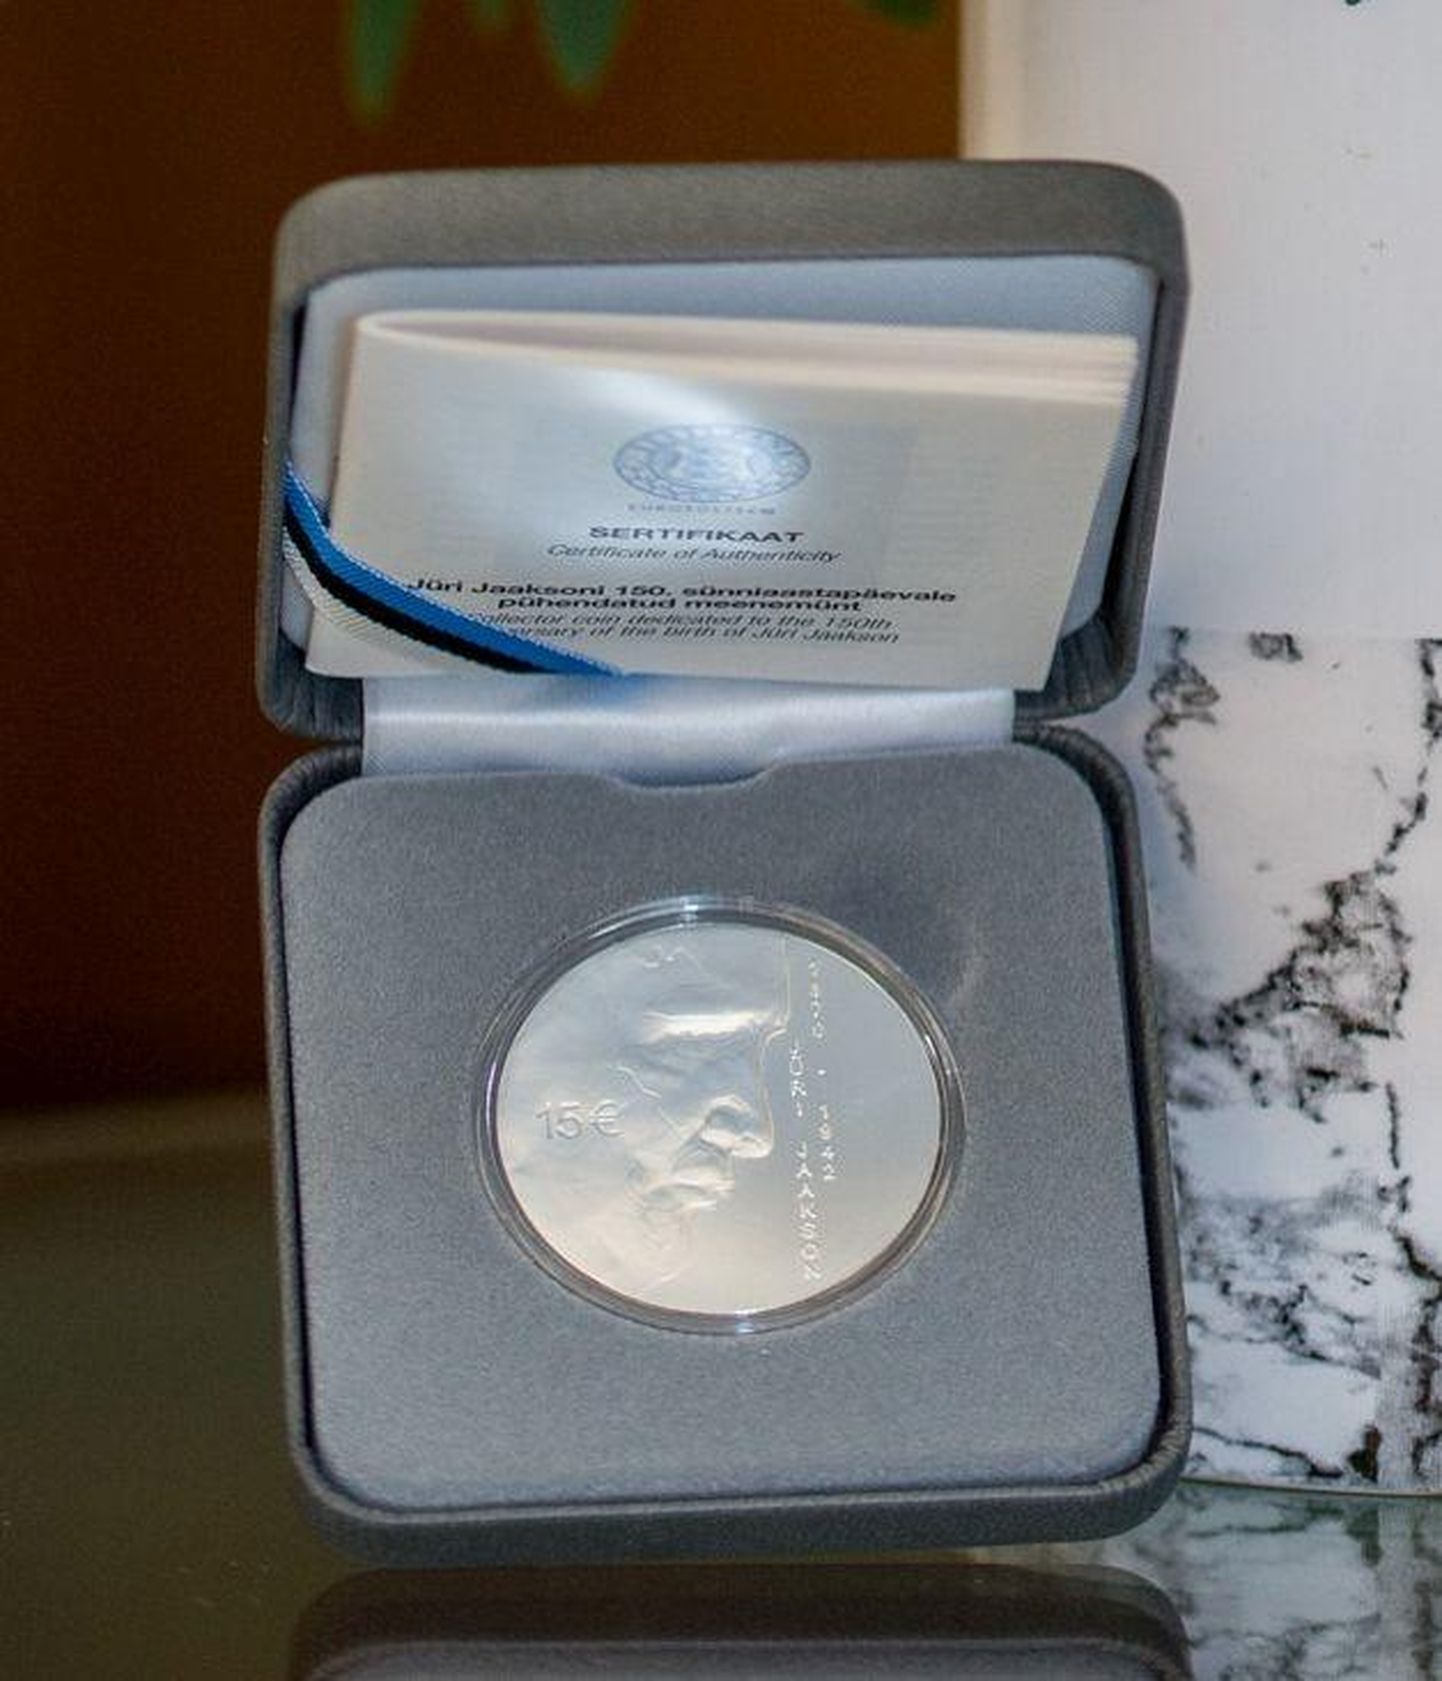 Eesti Pank vermis oma kunagise presidendi auks meenemündi.